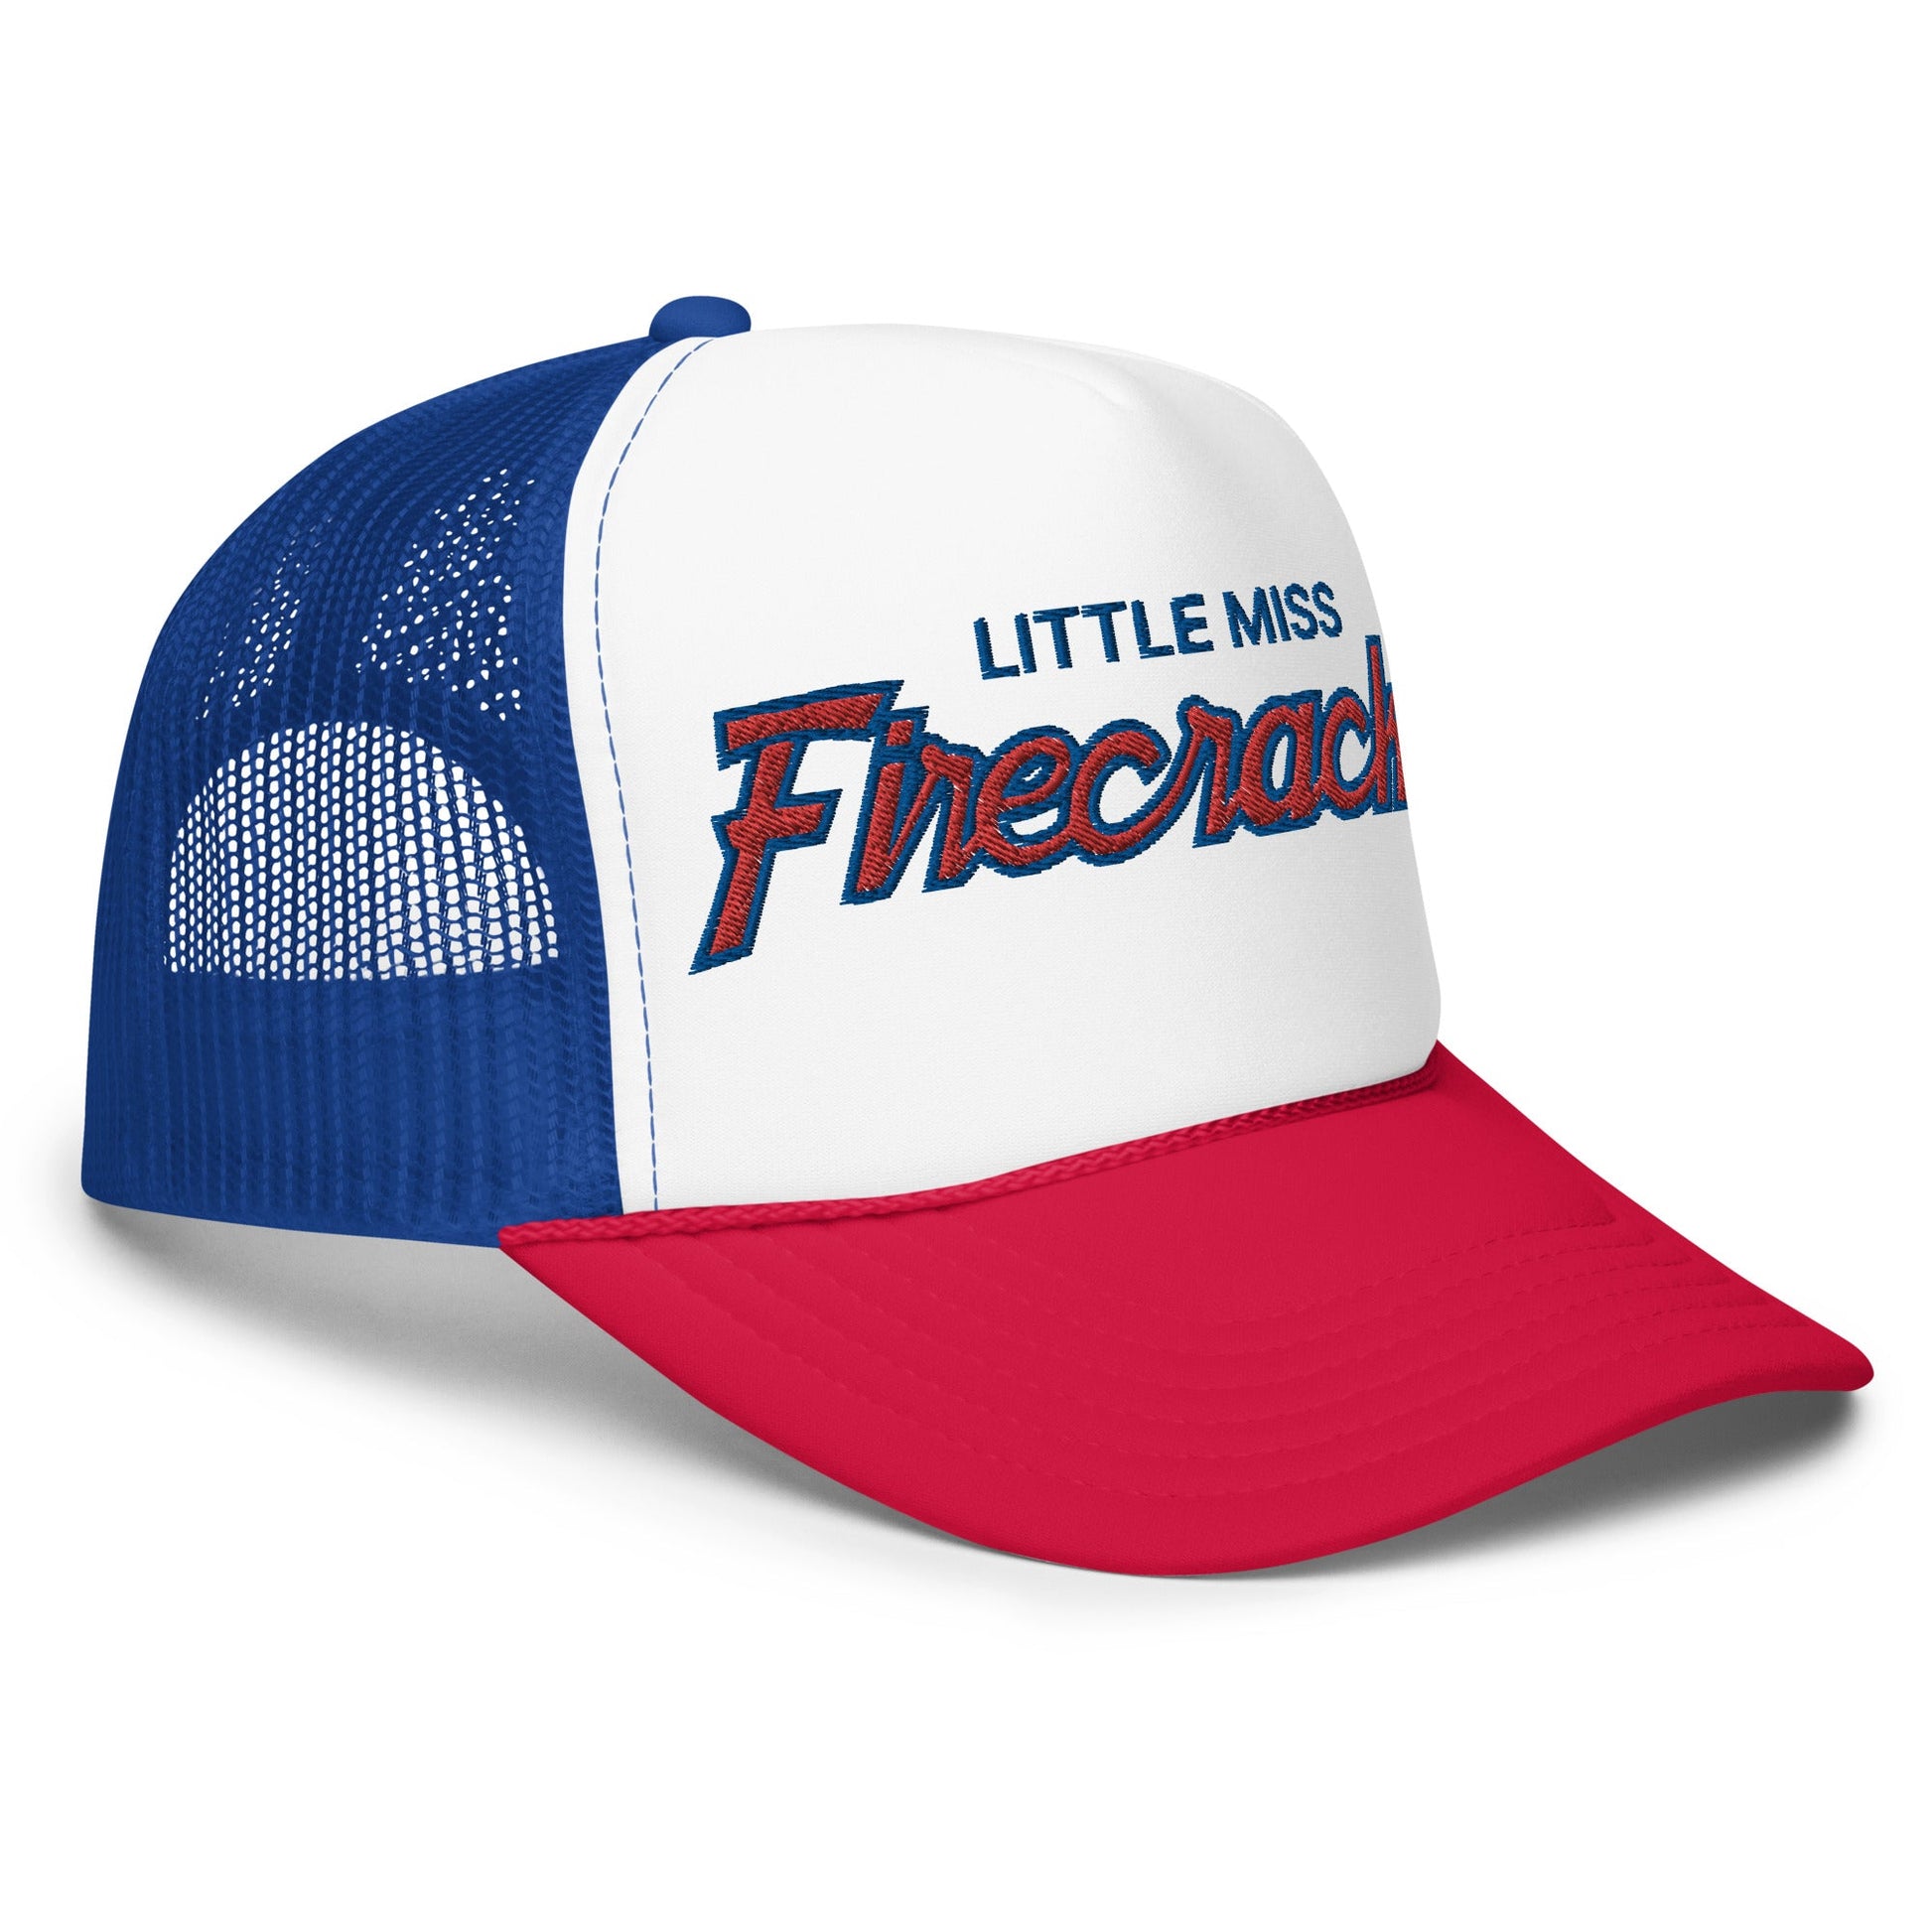 Little Miss Firecracker 4th of July Funny Foam Trucker Hat Red White Blue